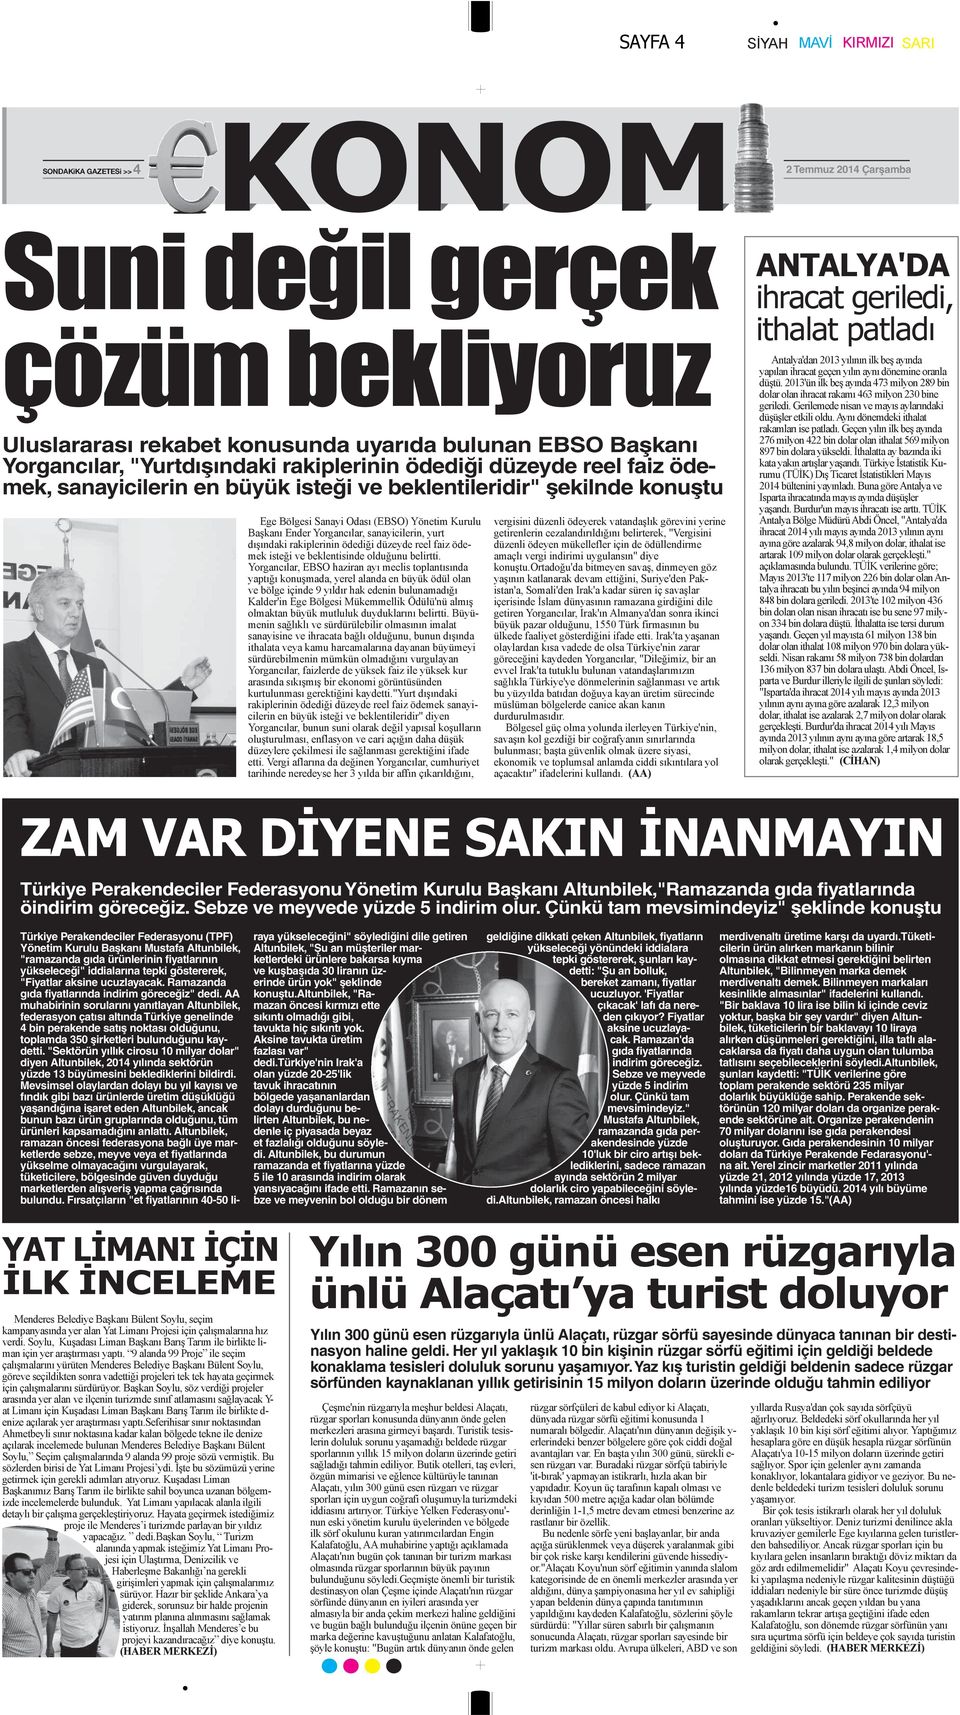 Çünkü tam mevsimindeyiz" şeklinde konuştu Türkiye Perakendeciler Federasyonu (TPF) Yönetim Kurulu Başkanı Mustafa Altunbilek, "ramazanda gıda ürünlerinin fiyatlarının yükseleceği" iddialarına tepki